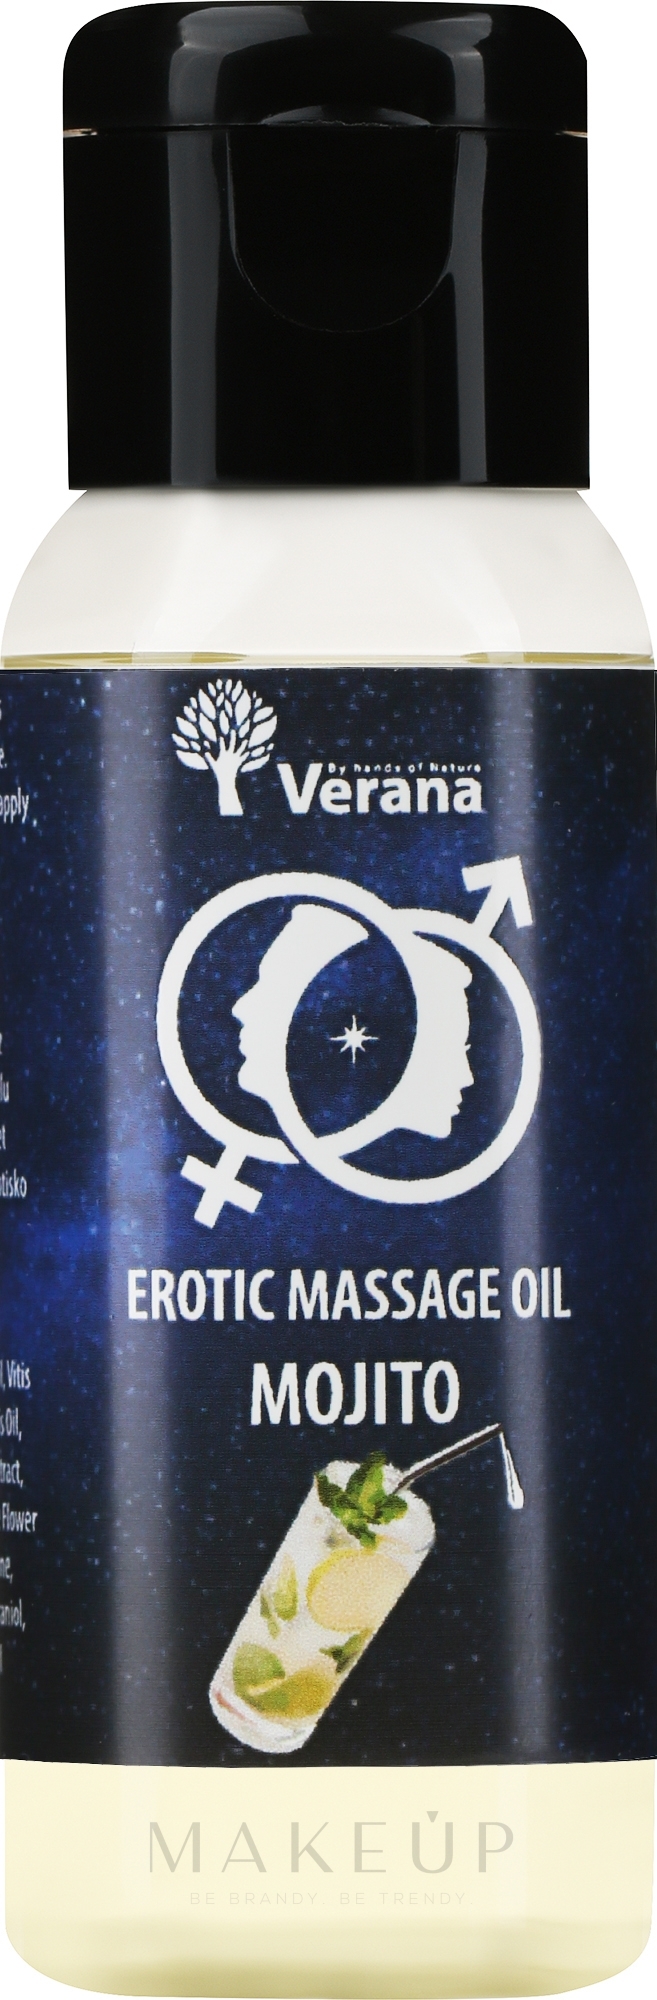 Öl für erotische Massage Mojito - Verana Erotic Massage Oil Mojito  — Bild 30 ml